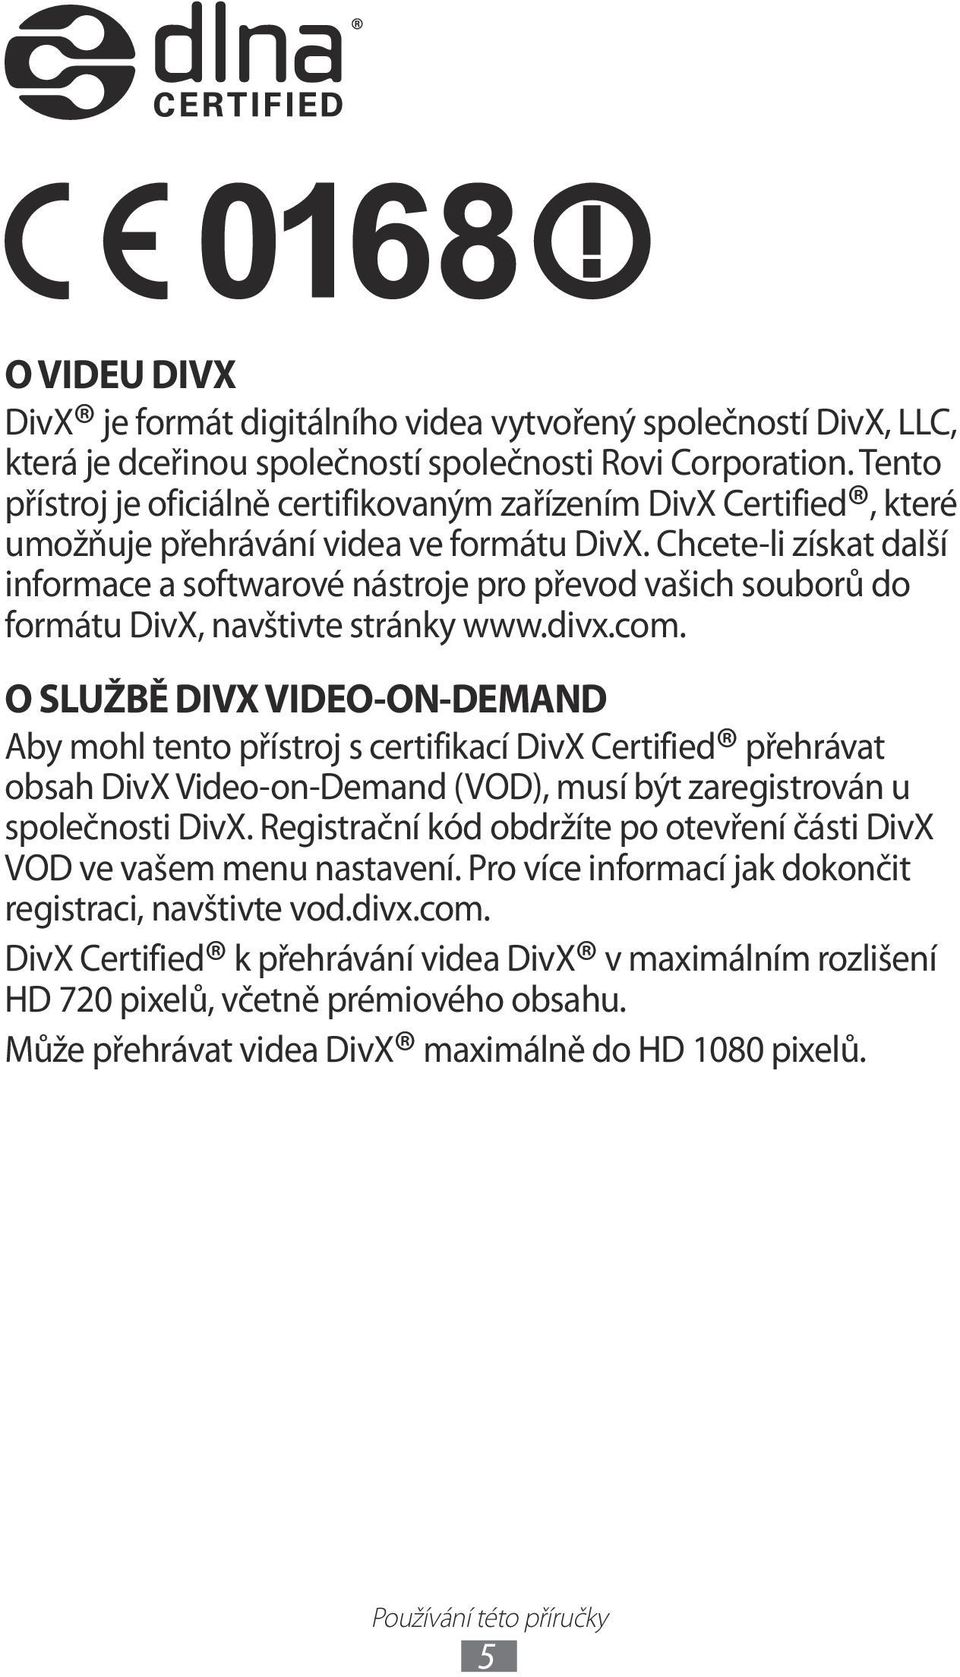 Chcete-li získat další informace a softwarové nástroje pro převod vašich souborů do formátu DivX, navštivte stránky www.divx.com.